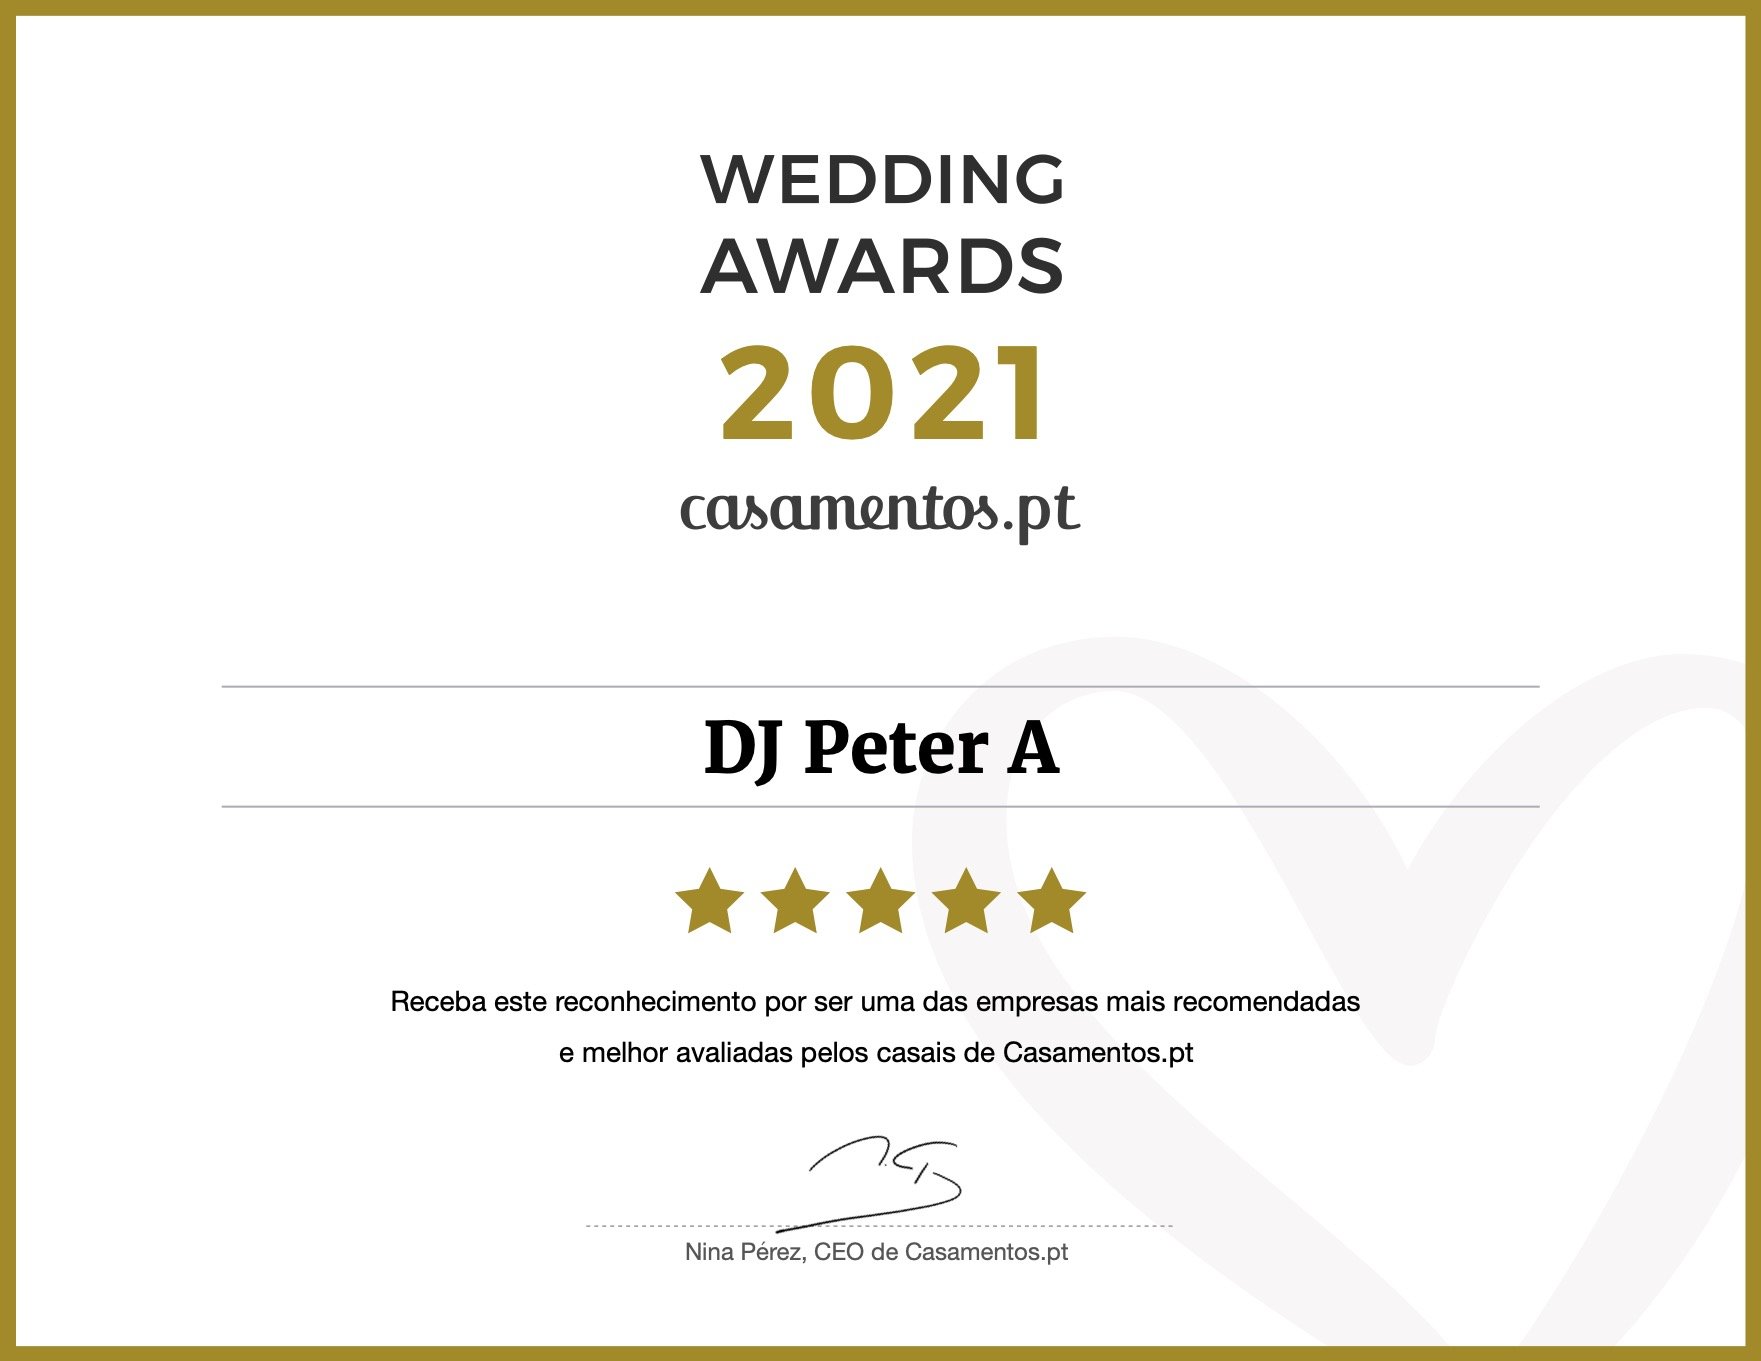 Wedding Awards 2021 - DJ Peter A - Casamentos.pt 🏆